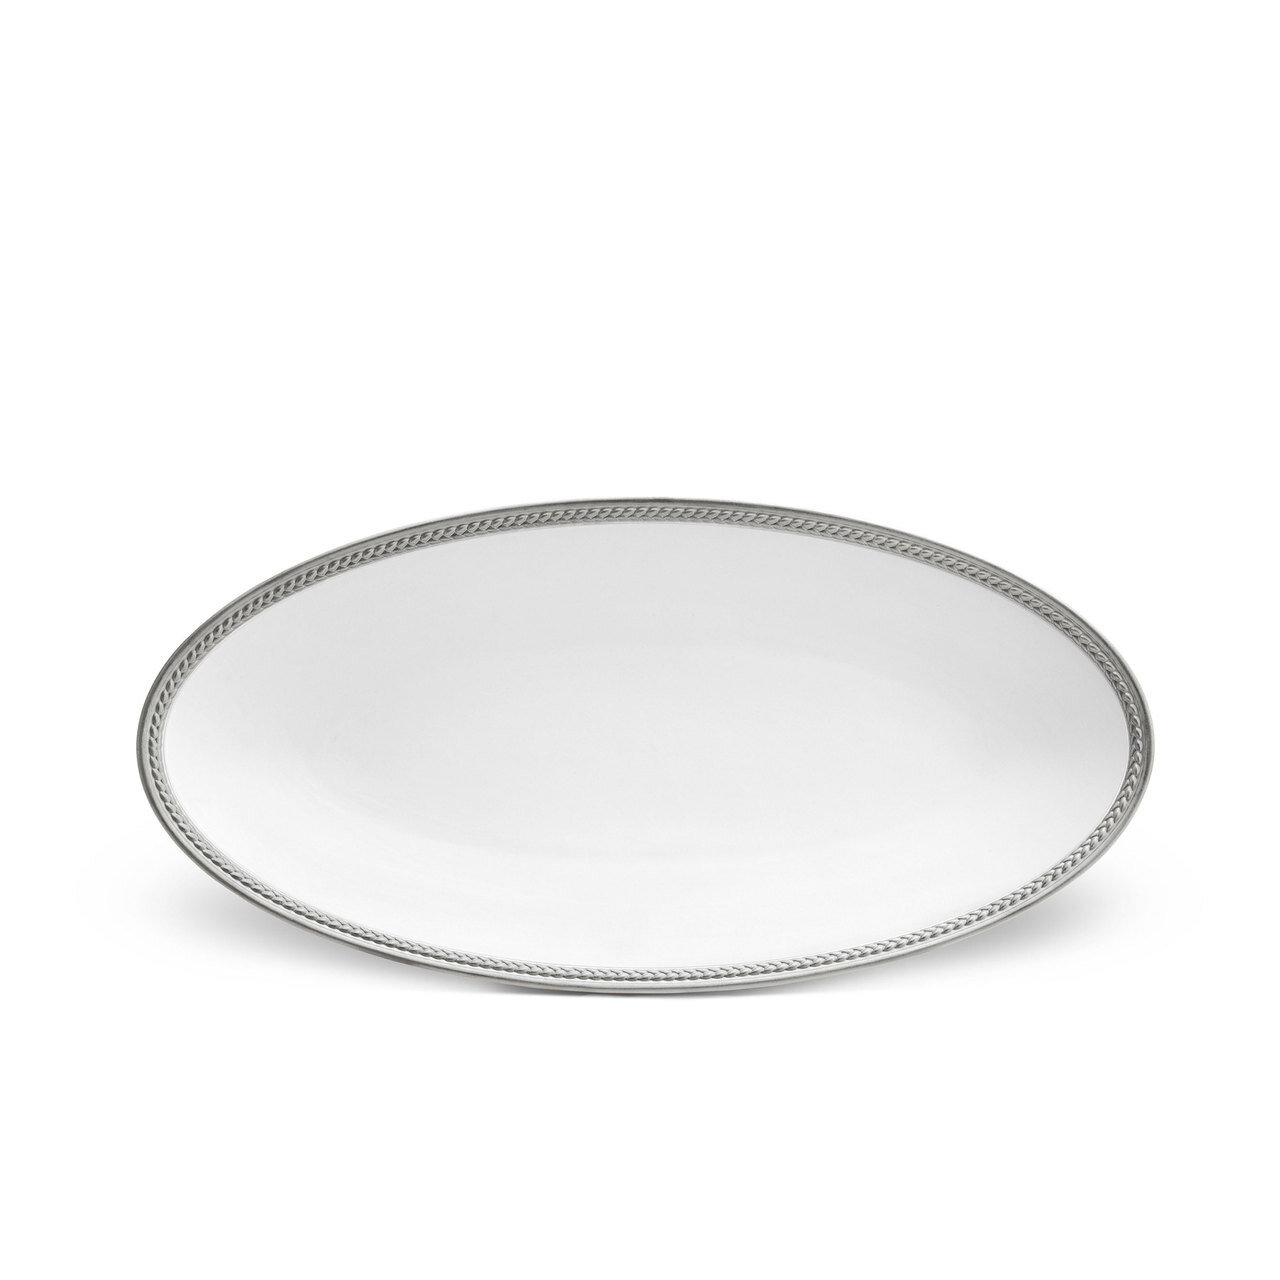 L'Objet Soie Tressee Small Oval Platter Platinum